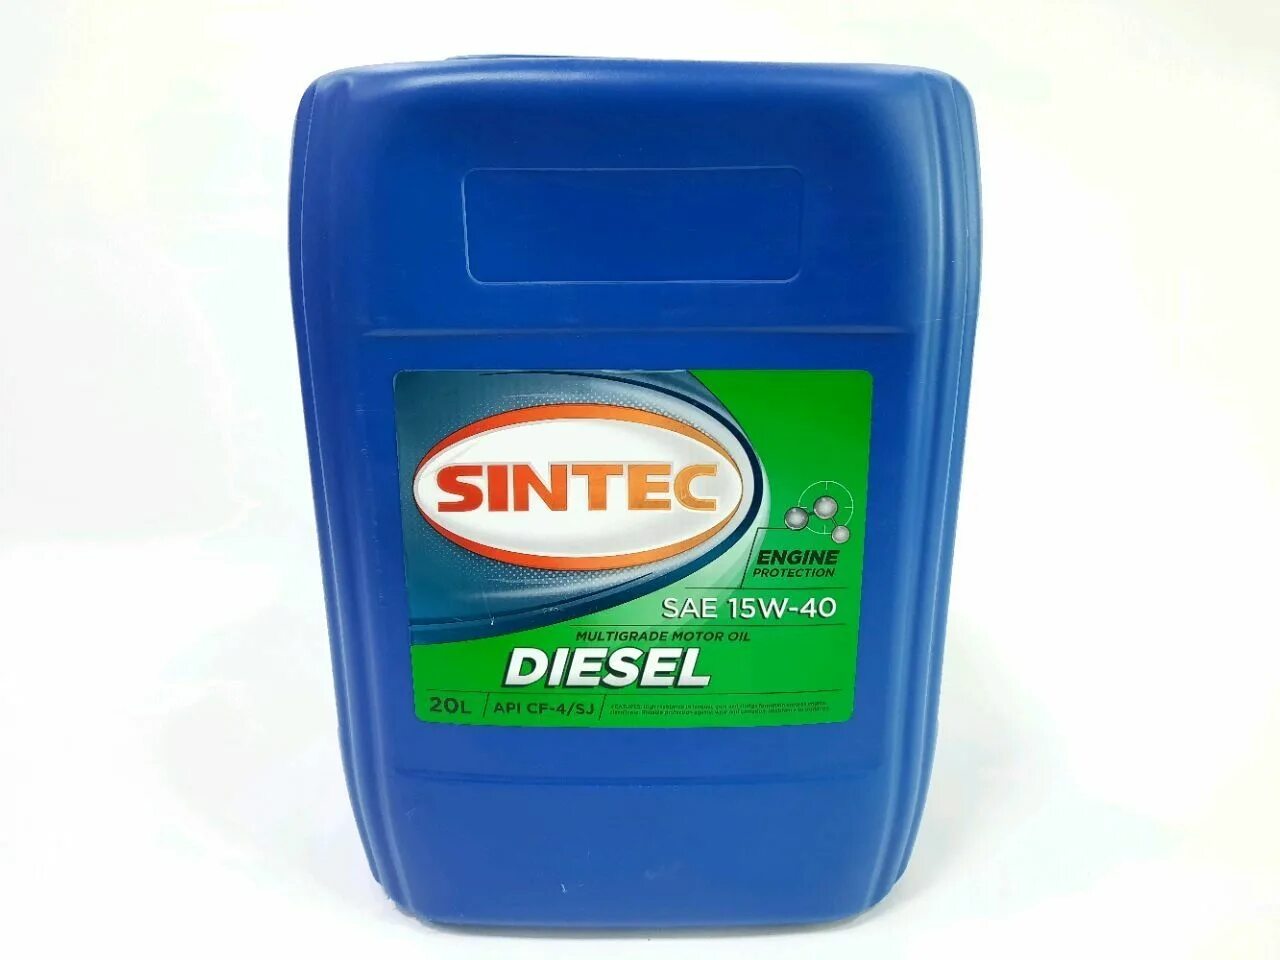 Sintec CF-4 15w-40 20л. Sintec 15w-40 Diesel. Sintec Diesel SAE 15w-40 API CF-4/SJ 20л. Sintec 15w40 Diesel артикул.